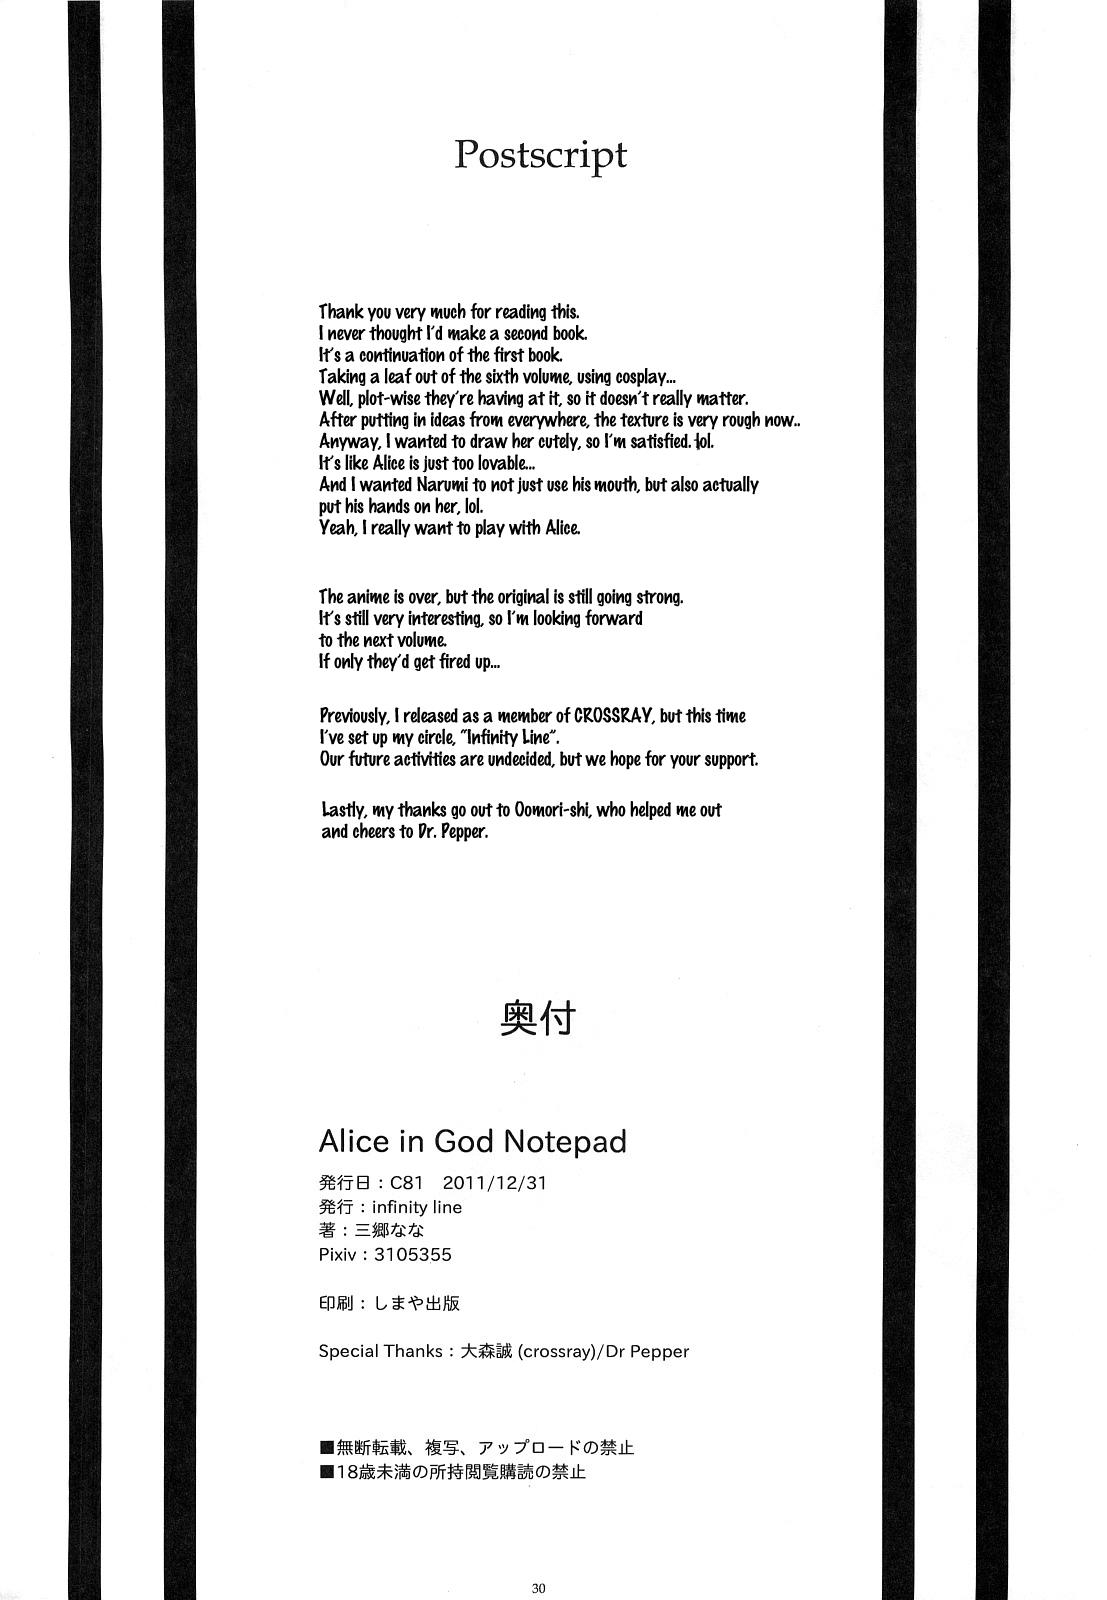 Alice in God Notepad 28